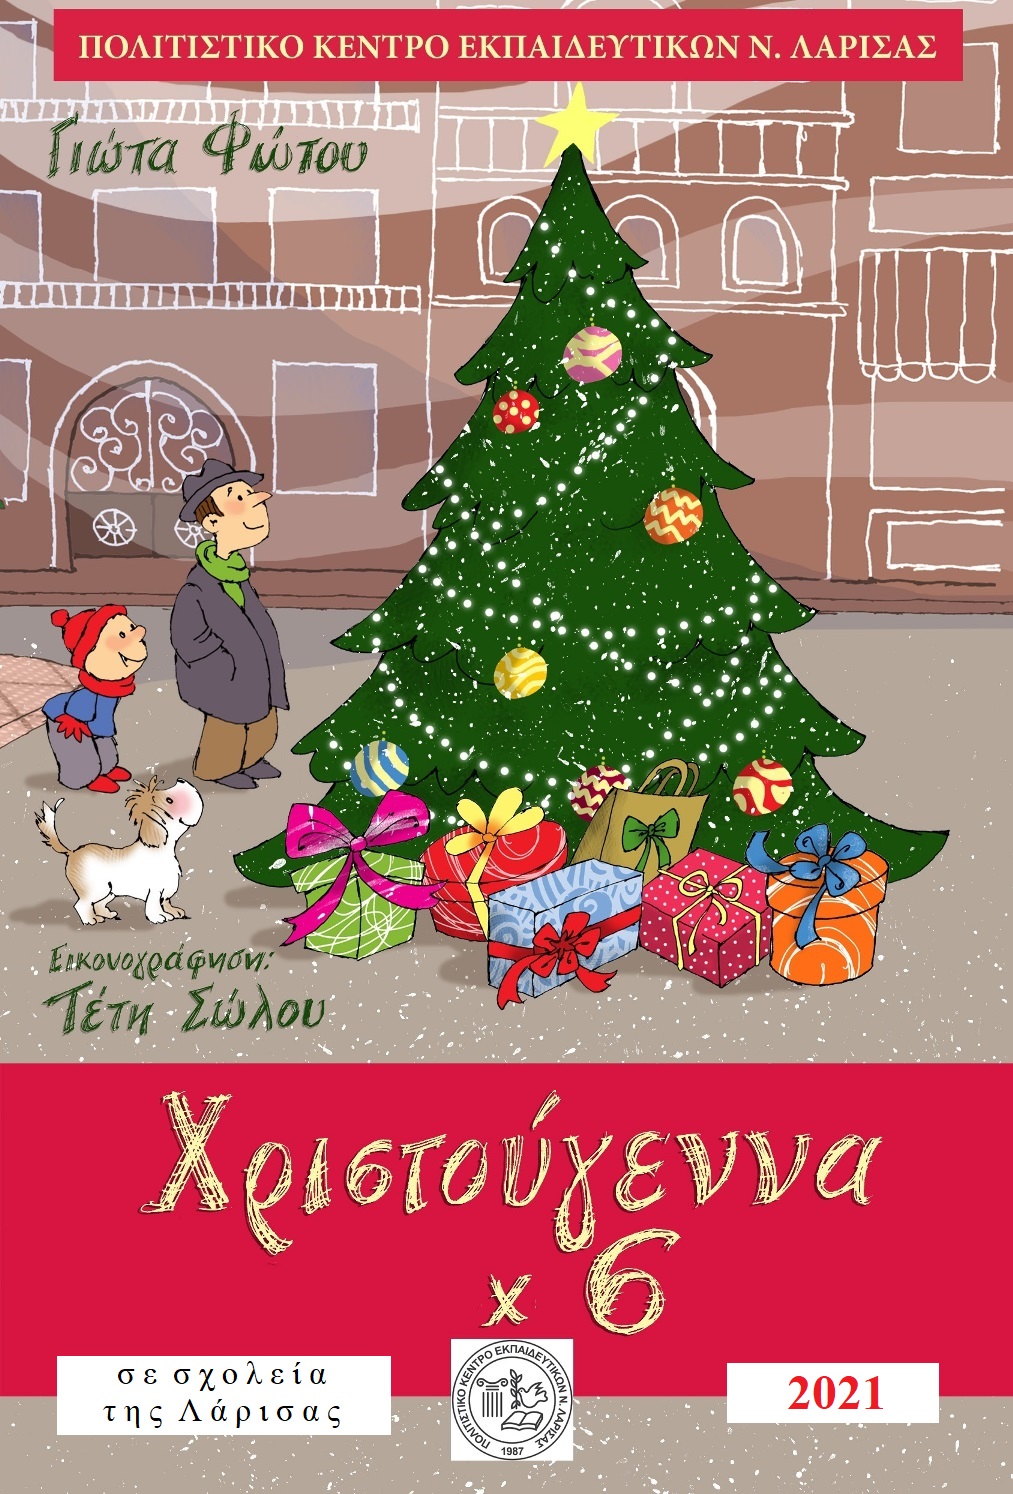 Το βιβλίο της Γ. Φώτου "Χριστούγεννα x 6" σε σχολεία της Λάρισας 